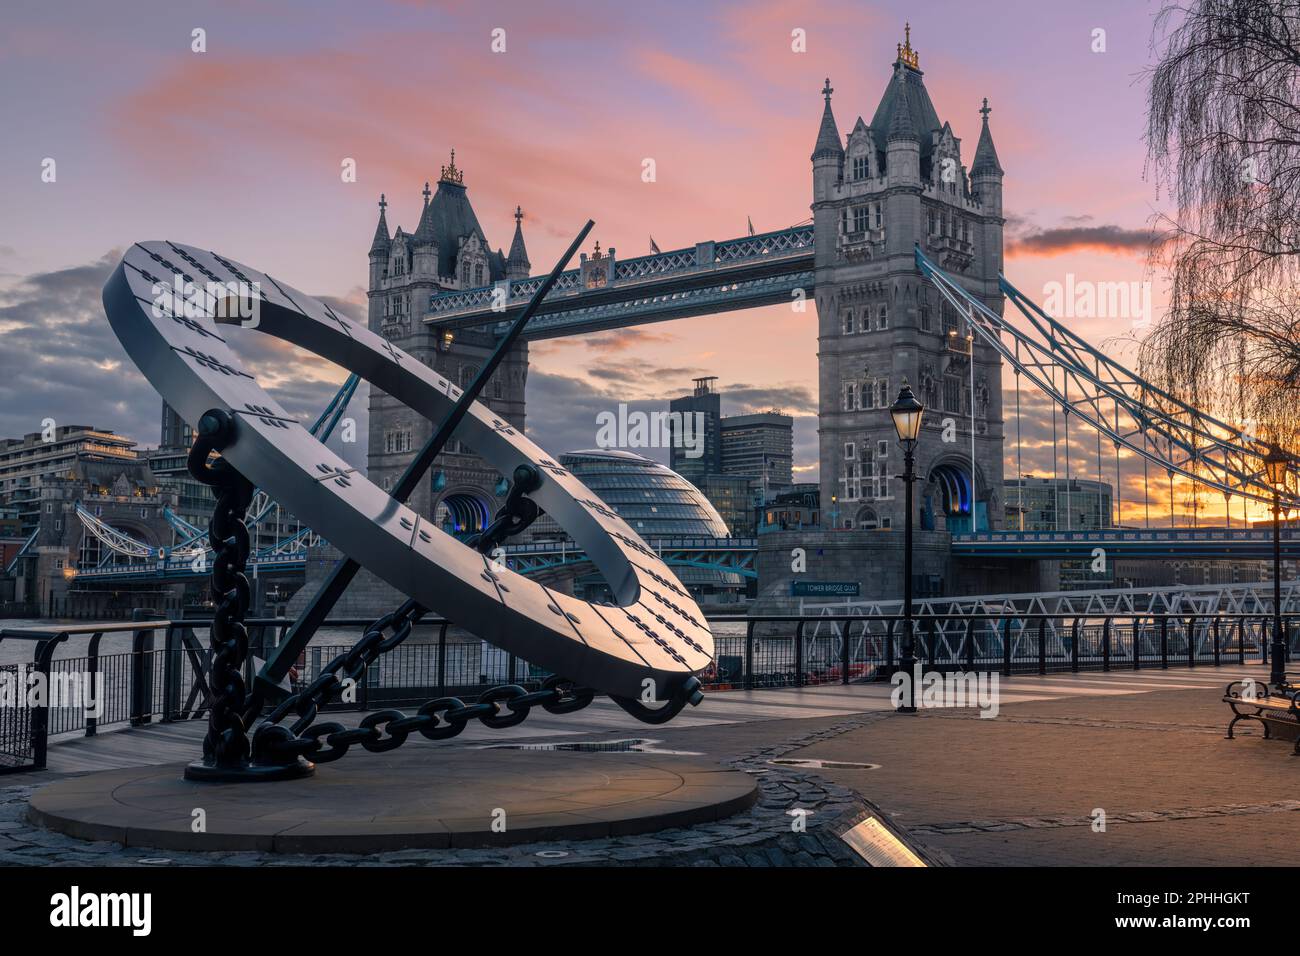 « Timepiece » et Tower Bridge au crépuscule - le cadran solaire, intitulé « Timepiece », conçu par Wendy Taylor pour les hôtels Strand, et le légendaire Tower Bridge, reconnai Banque D'Images